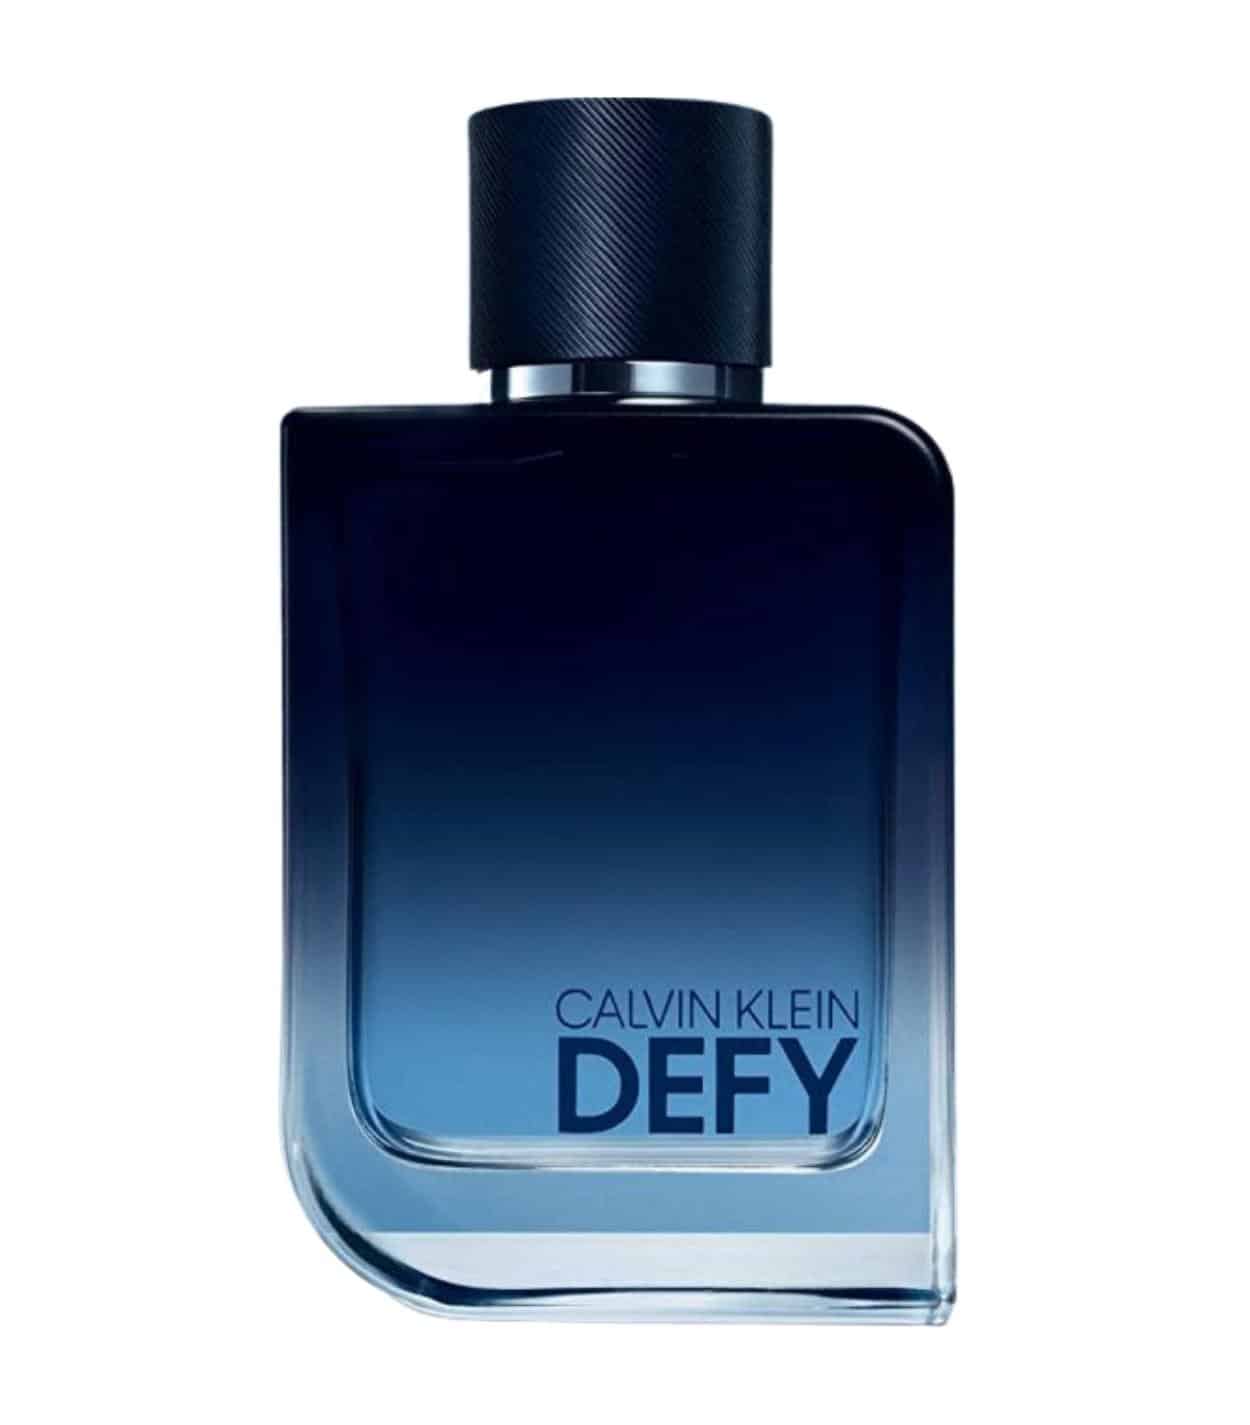 Most Popular Men’s Cologne In A Blue Bottle - FragranceReview.com